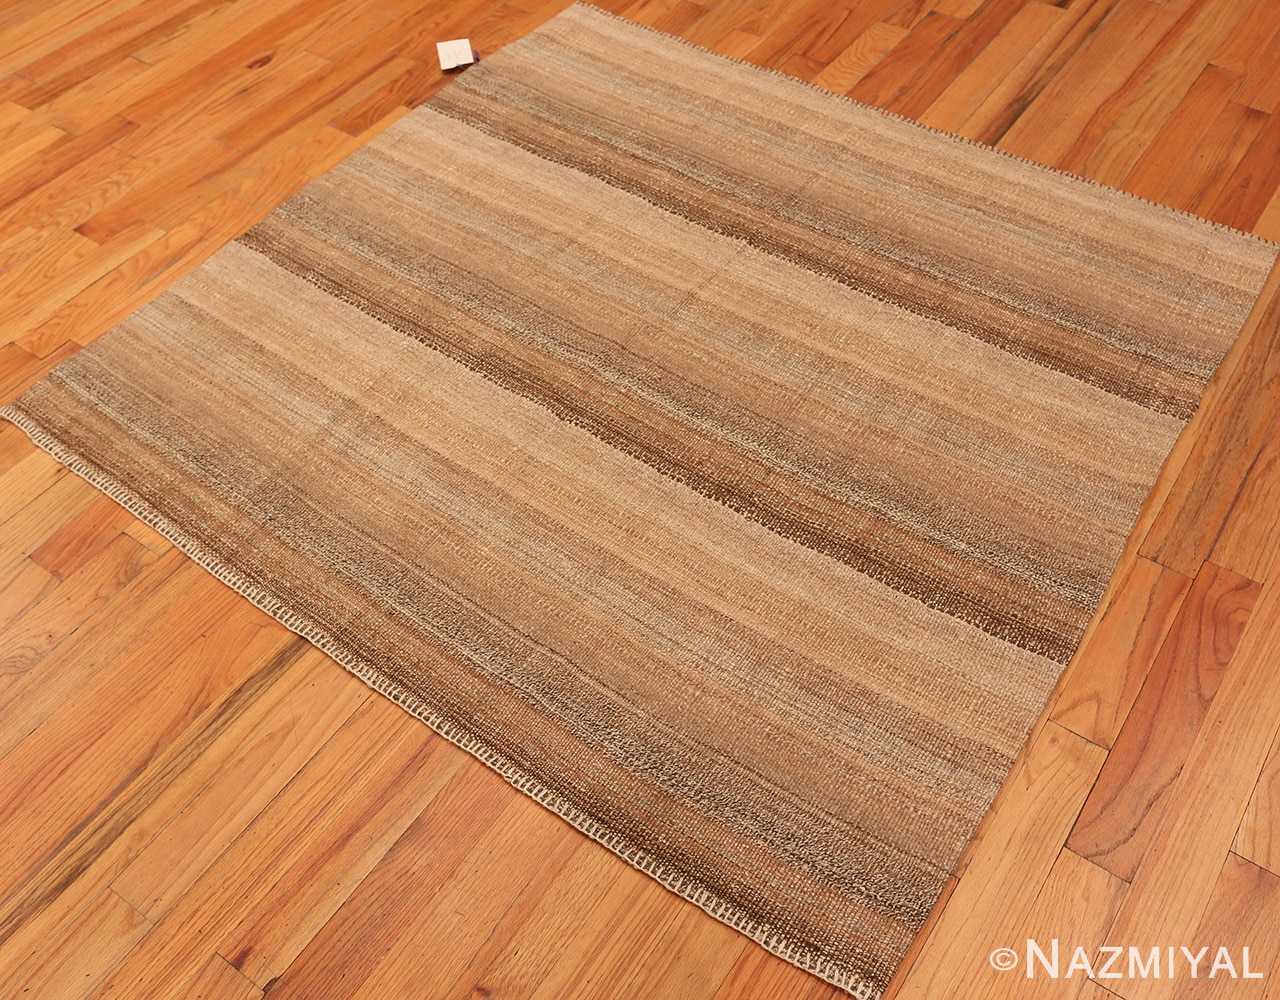 Whole View Of Small Brown Modern Persian Kilim Rug 60093 by Nazmiyal NYC